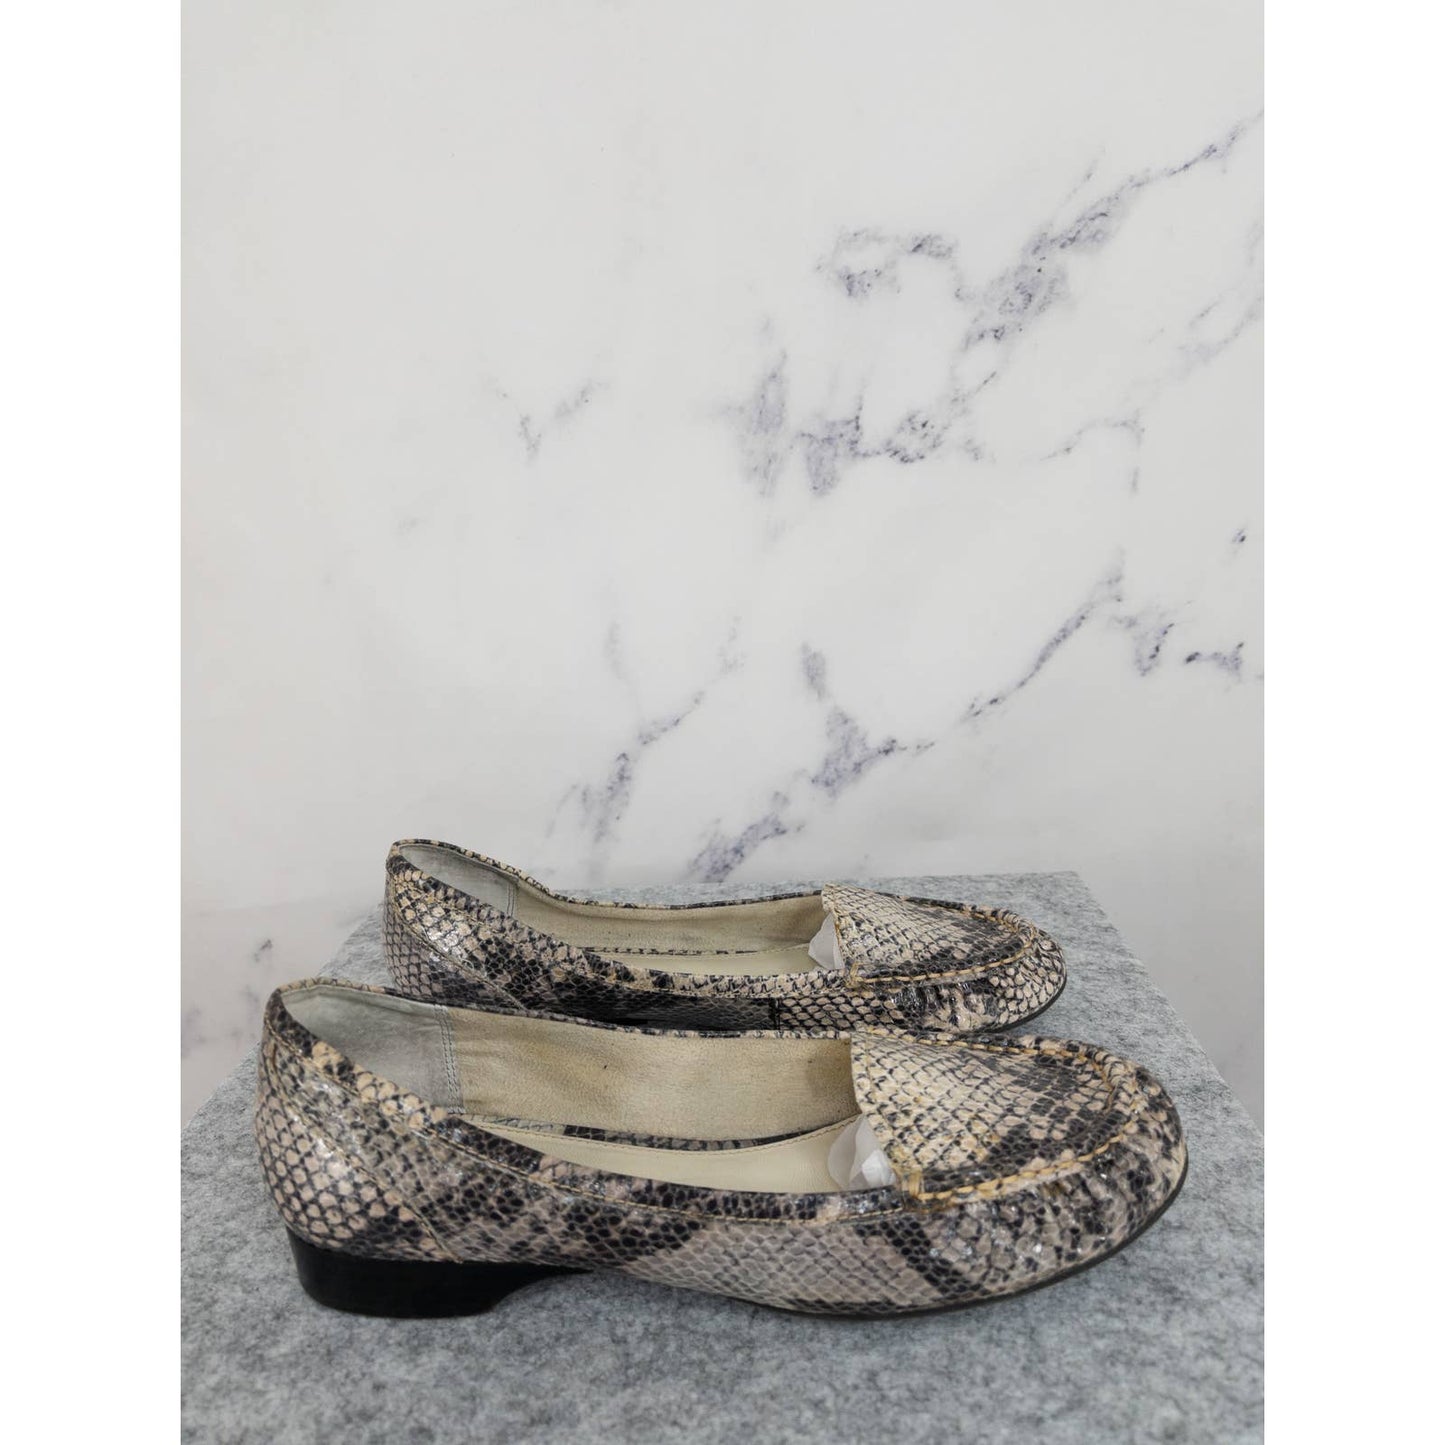 Franco Sarto | Tremor Snake Loafers | Size 7.5